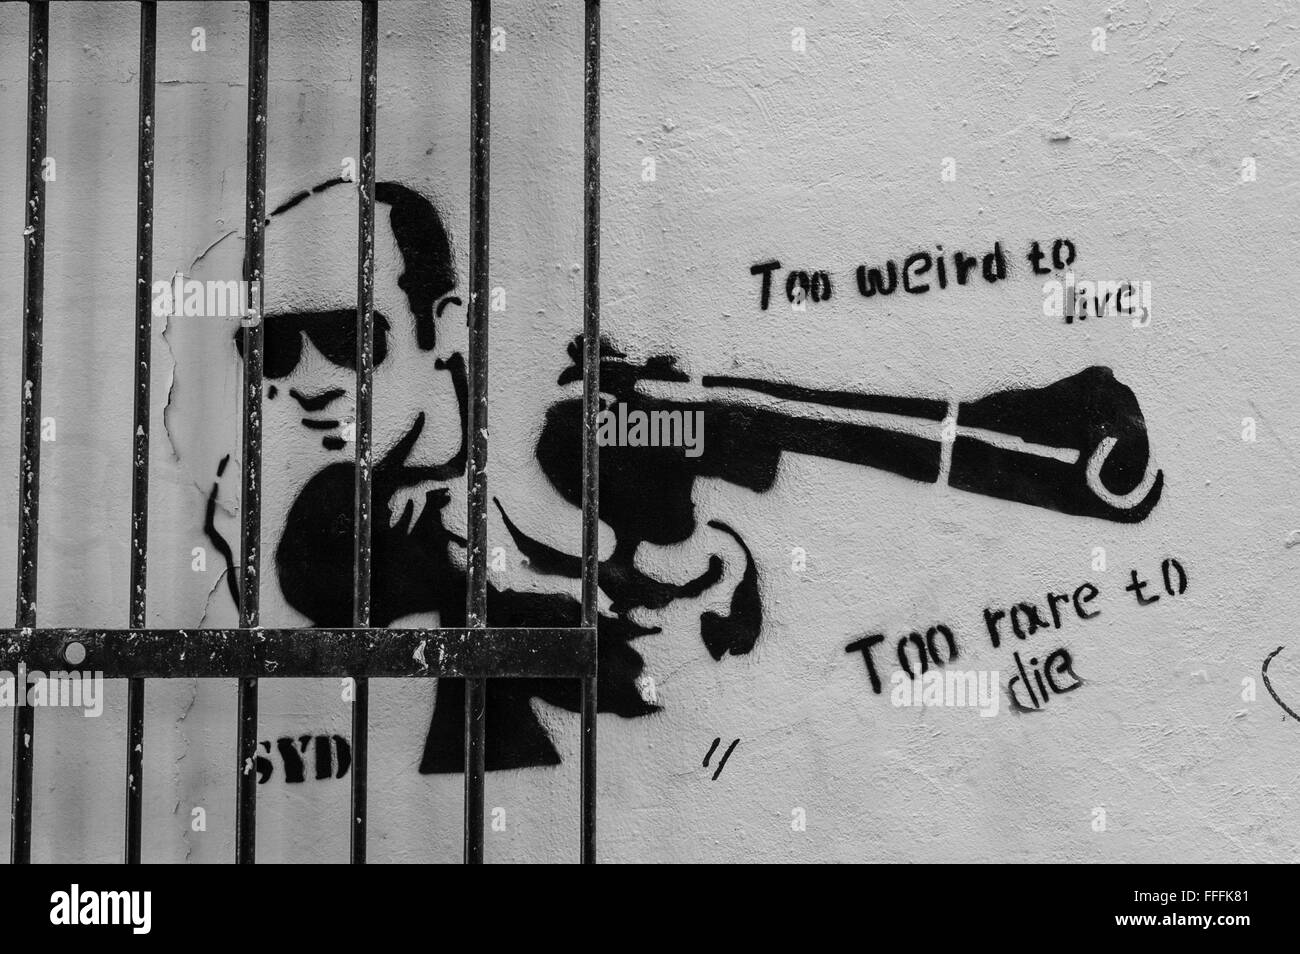 Graffiti an der Wand hinter dem Eisernen Tor. Mit dem Menschen Zeigen einer Gewehr, und die Wörter "Zu sonderbar zu leben" Stockfoto